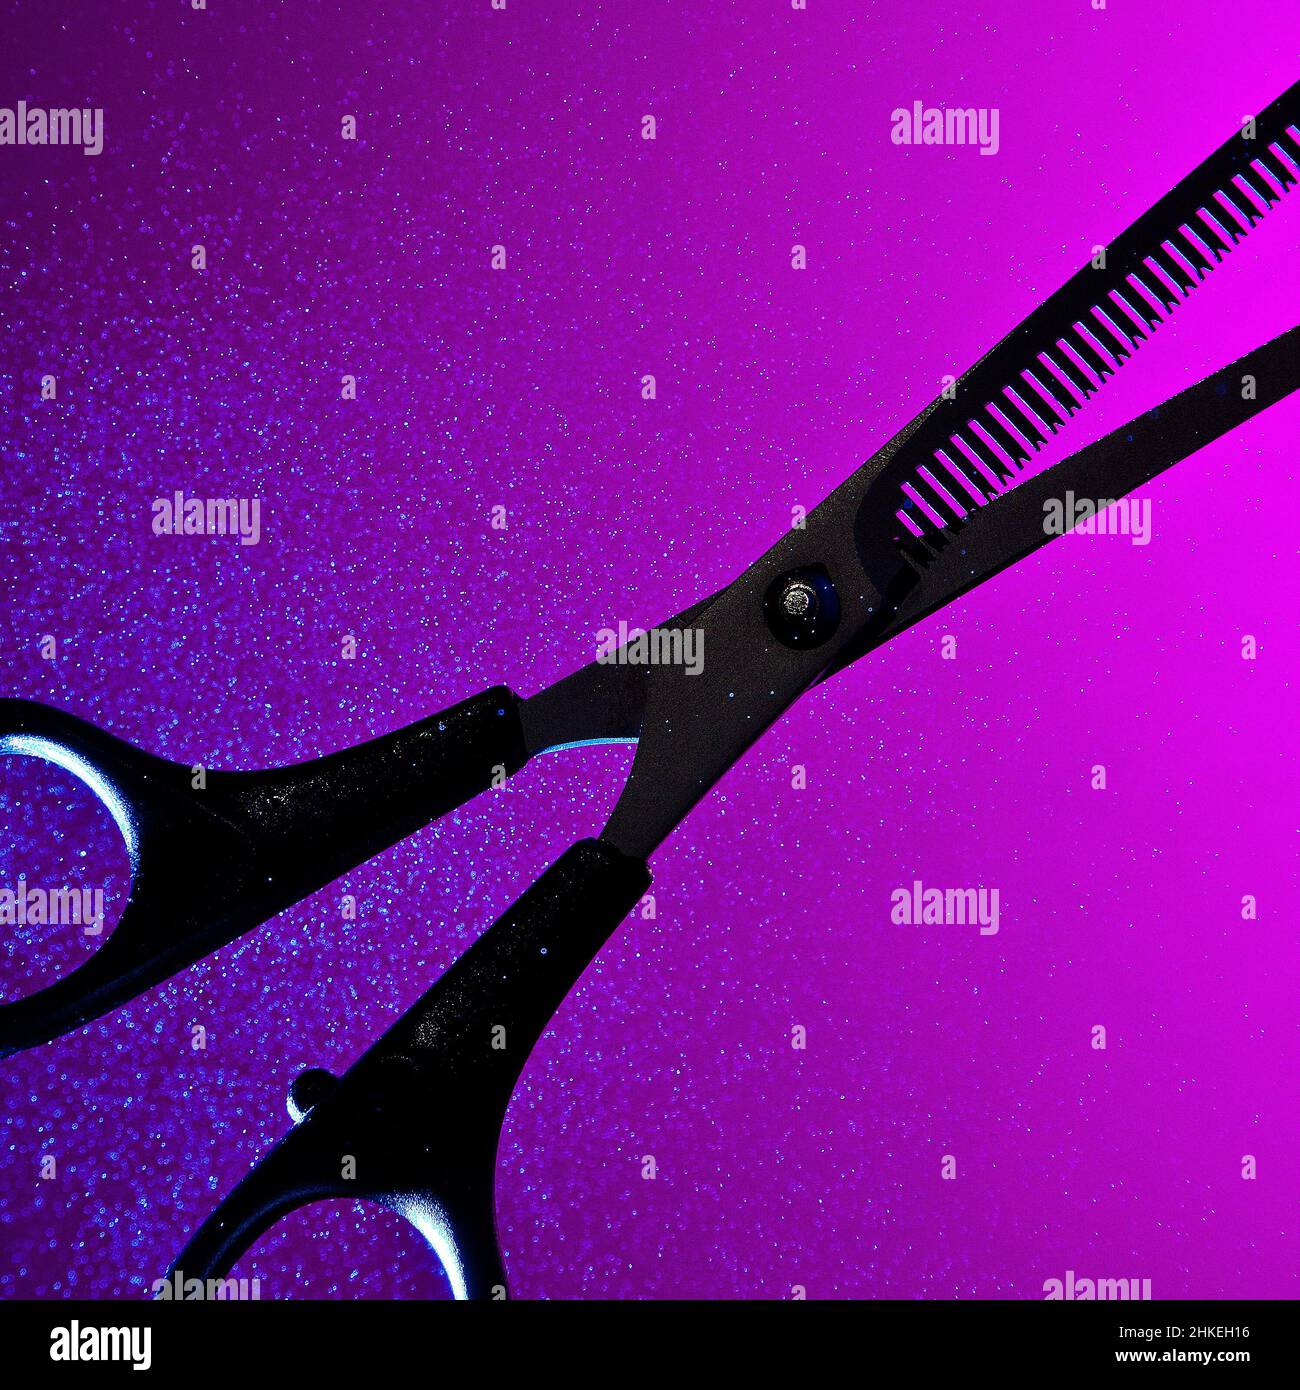 Eine abstrakte konzeptuelle kunstvolle Silhouette aus dünner werdendem Scheren, die vor einem sattvioletten und rosa Hintergrund mit einem glühenden Nebelspray beleuchtet wird Stockfoto